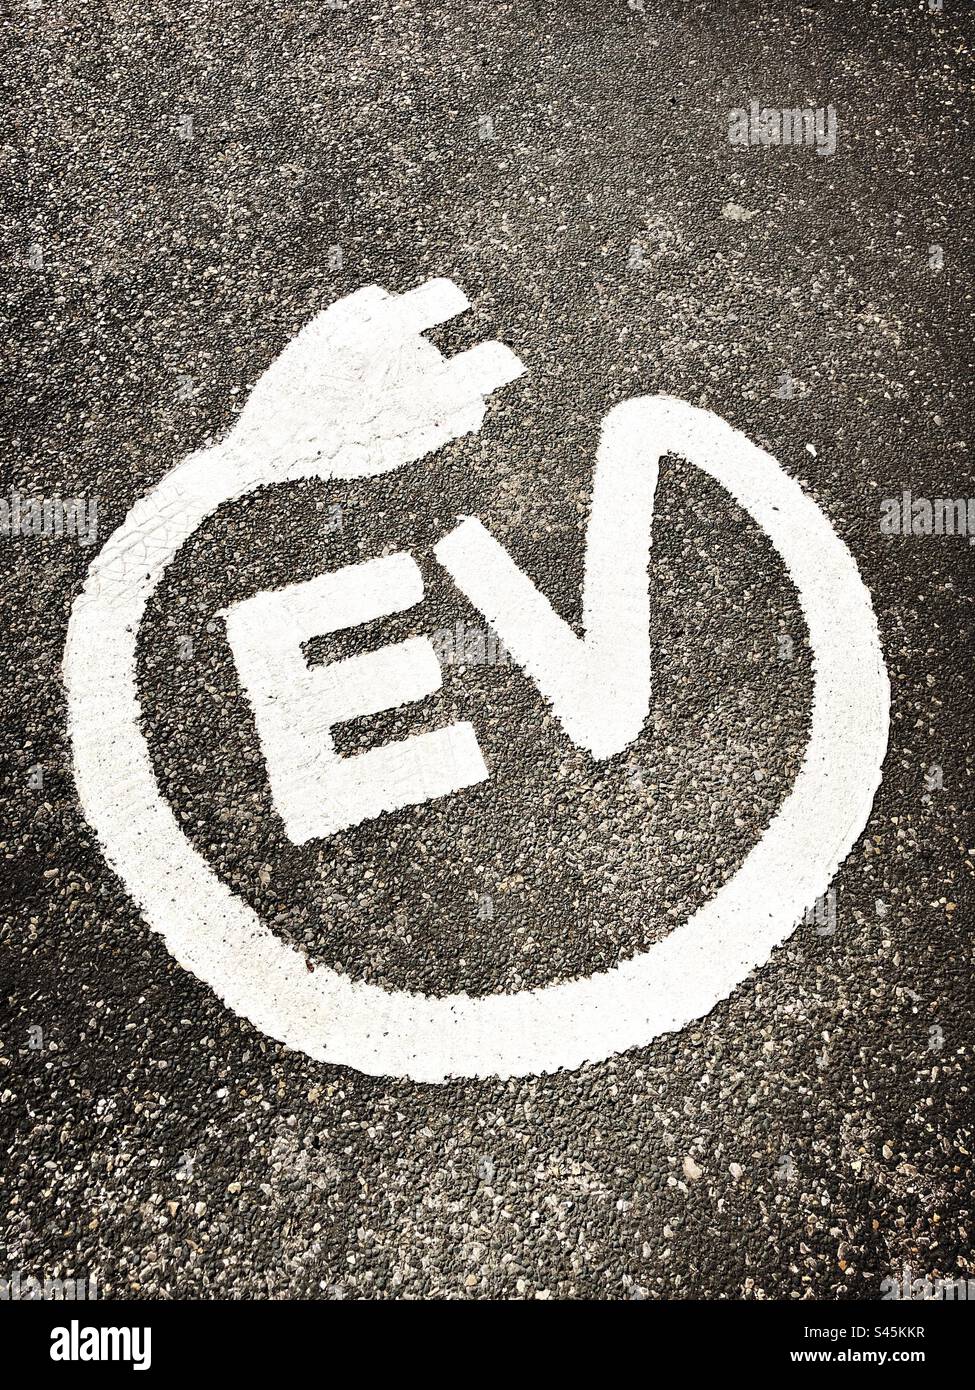 Electric vehicle symbol on the ground, United Kingdom Stock Photo